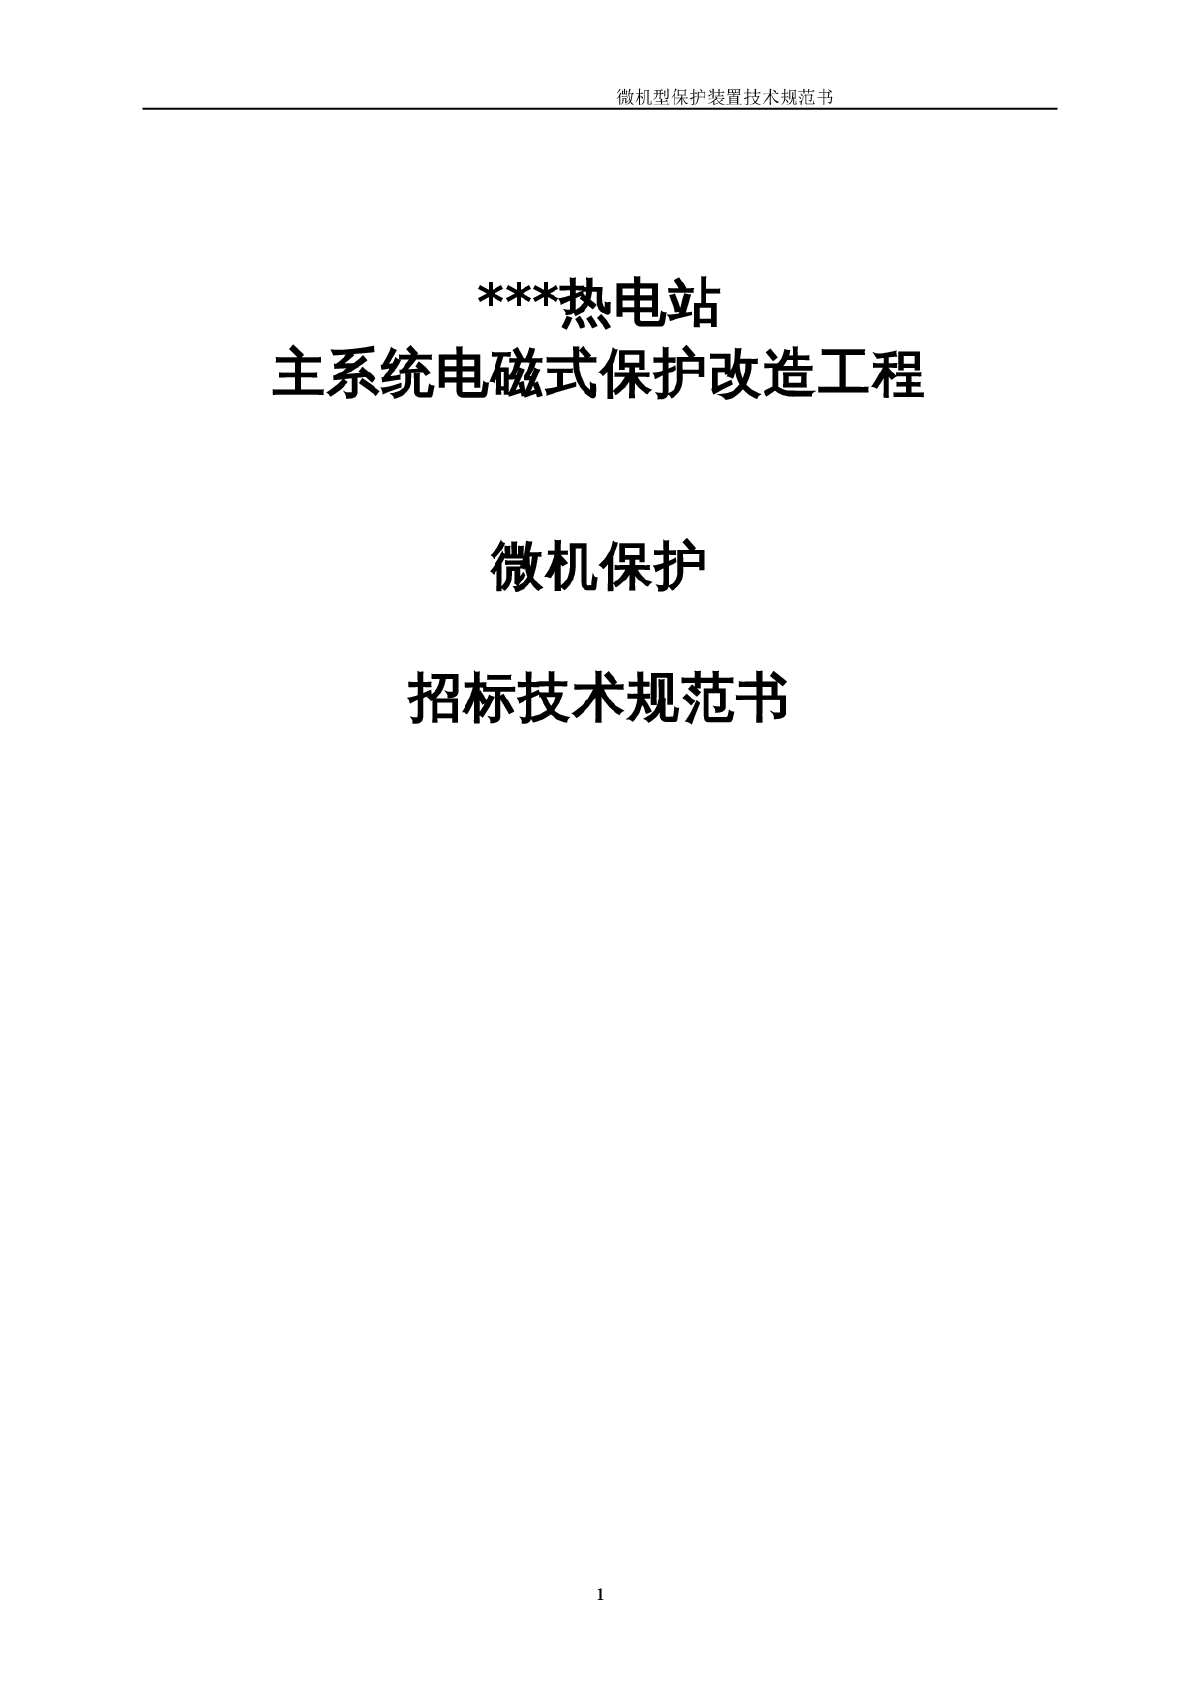 广州某热电站微机保护招标技术规范书